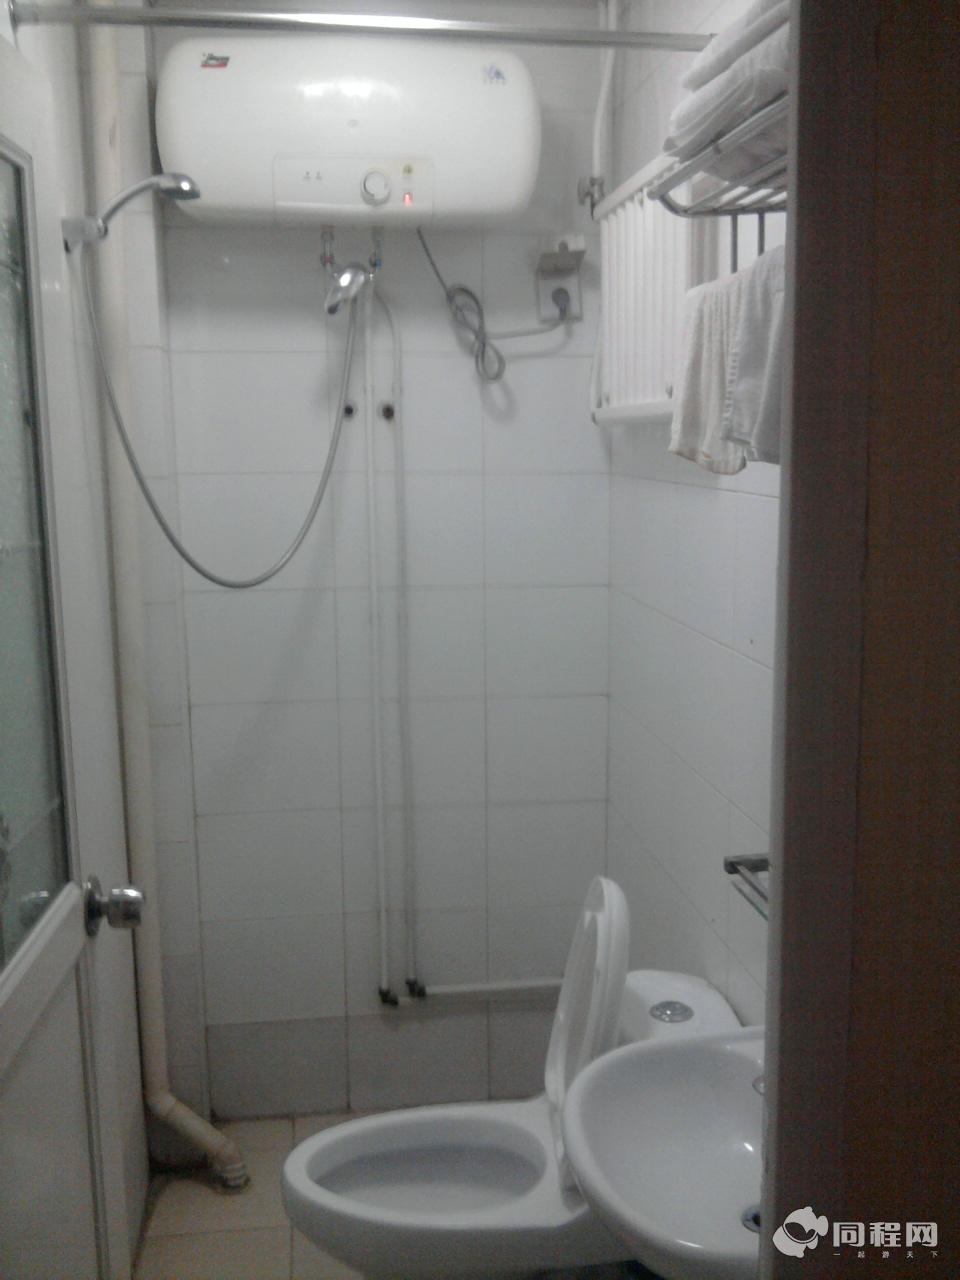 北京紫藤快捷酒店（西单店）图片浴室[由1590797****提供]